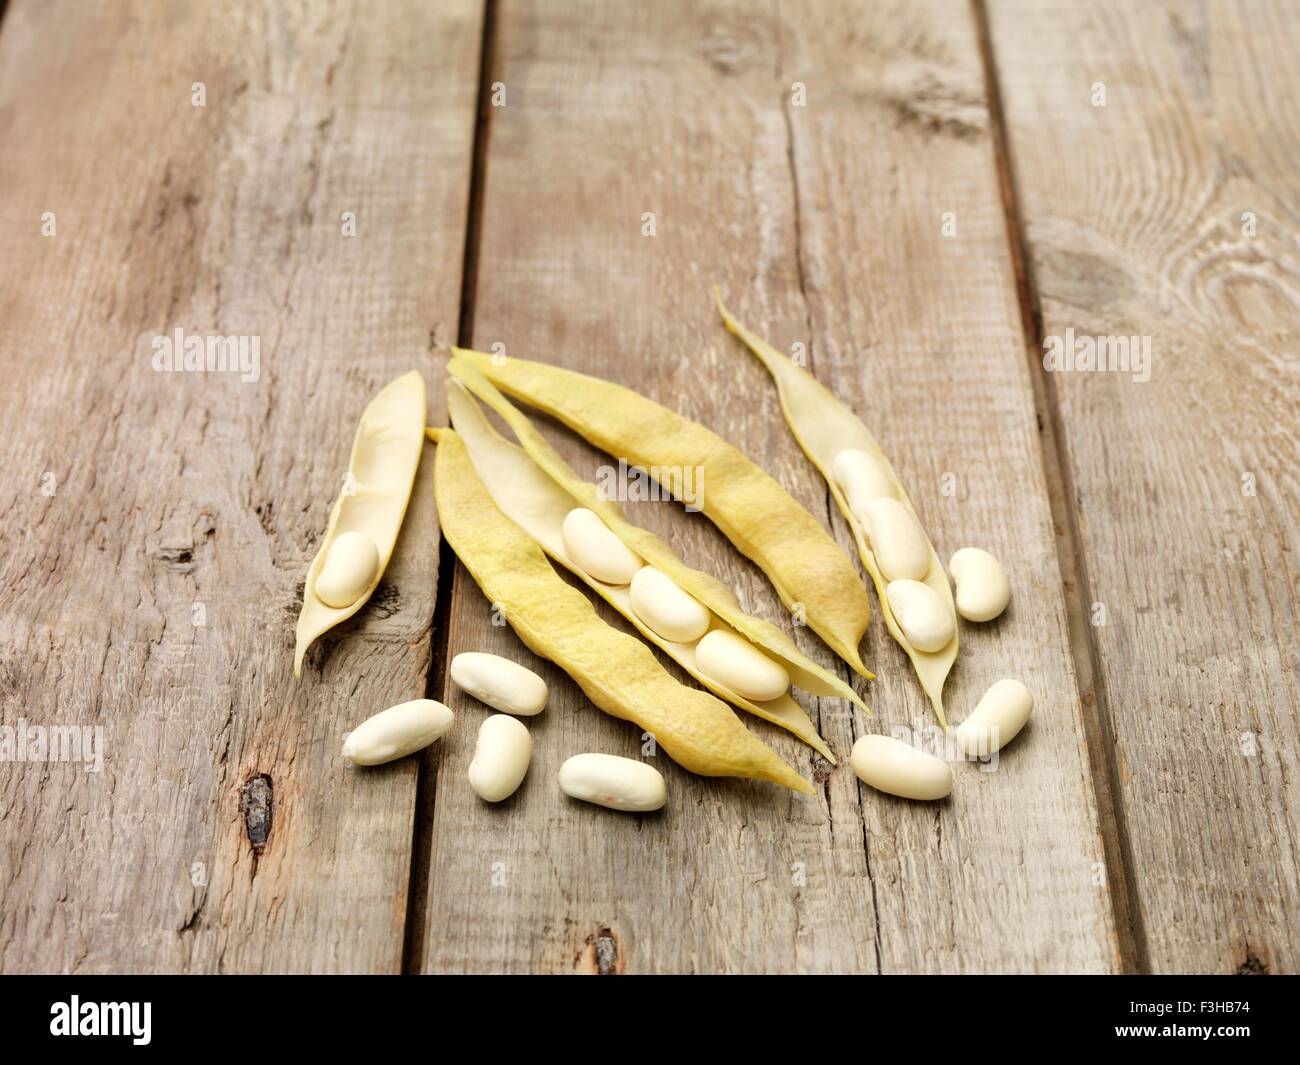 Still Life de haricots CANNELLINI (également connu sous le nom de haricots blancs) sur table en bois Banque D'Images